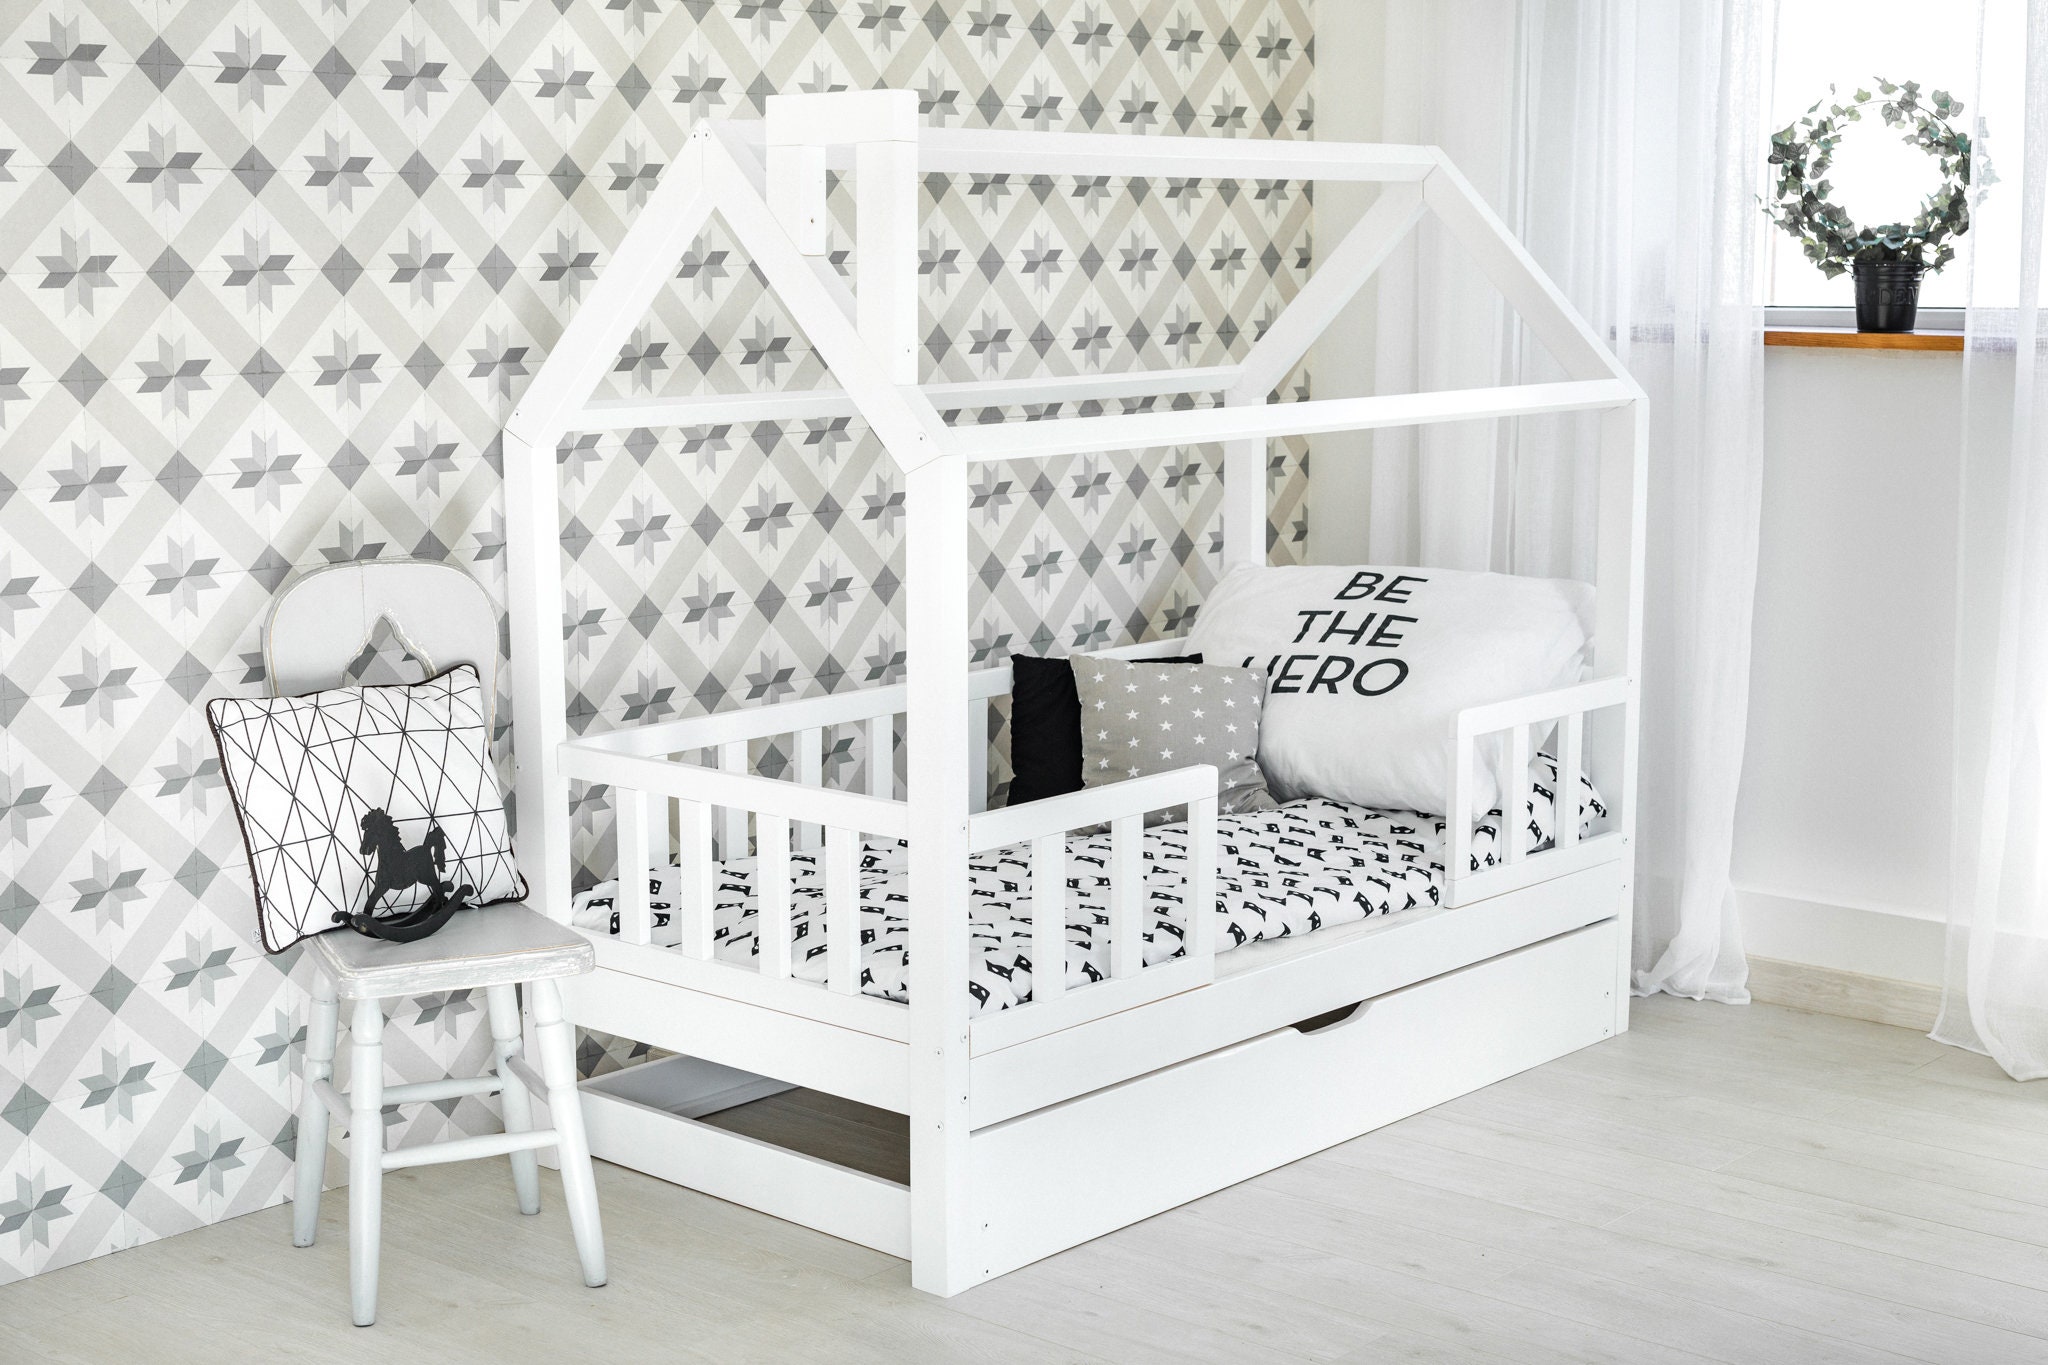 YappyLux Lit enfant blanc avec barrière de protection, lit enfant, meuble  enfant -  France